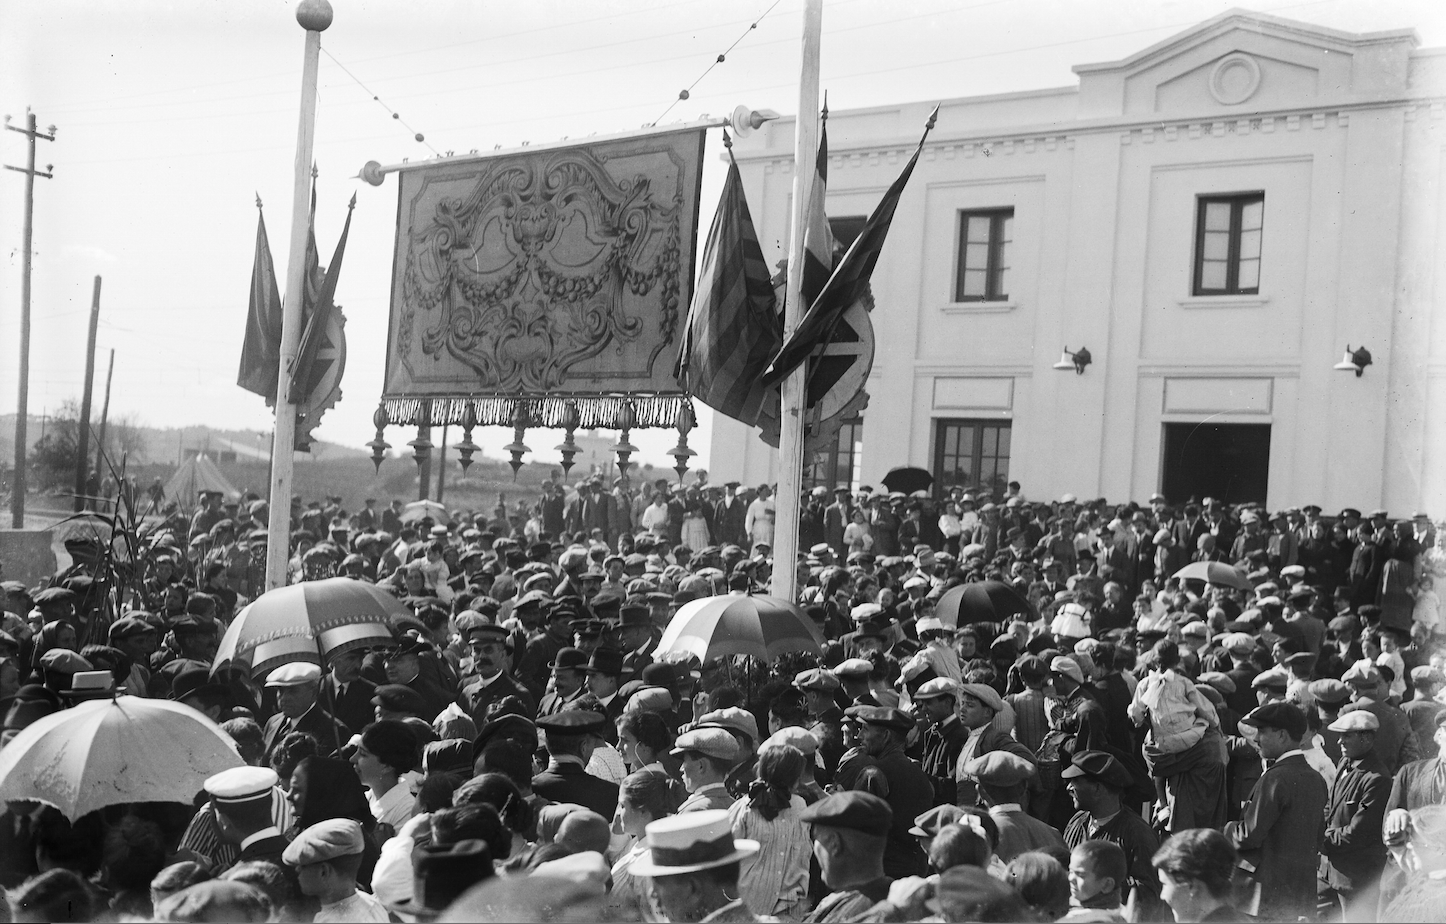 La inuguració de l'estació de Sant Cugat va reunir tots els santcugatencs FOTO: Arxiu FGC